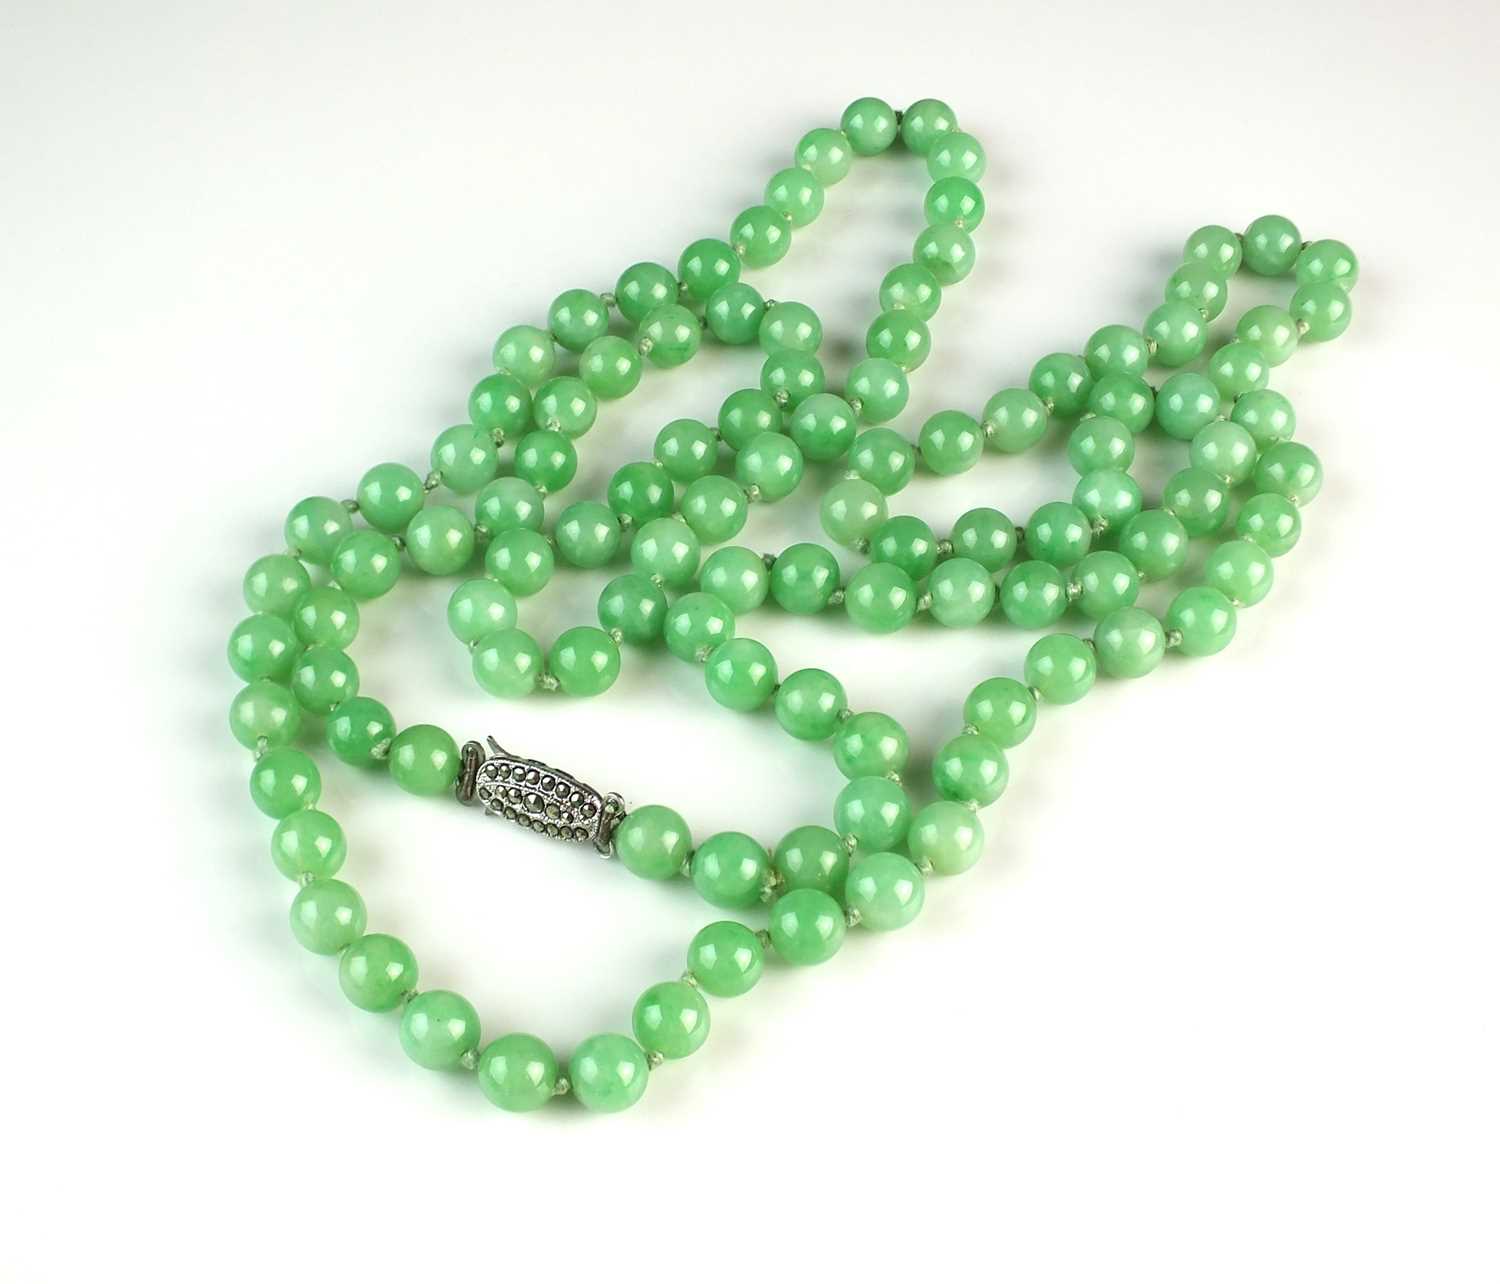 61 - A jade bead necklace